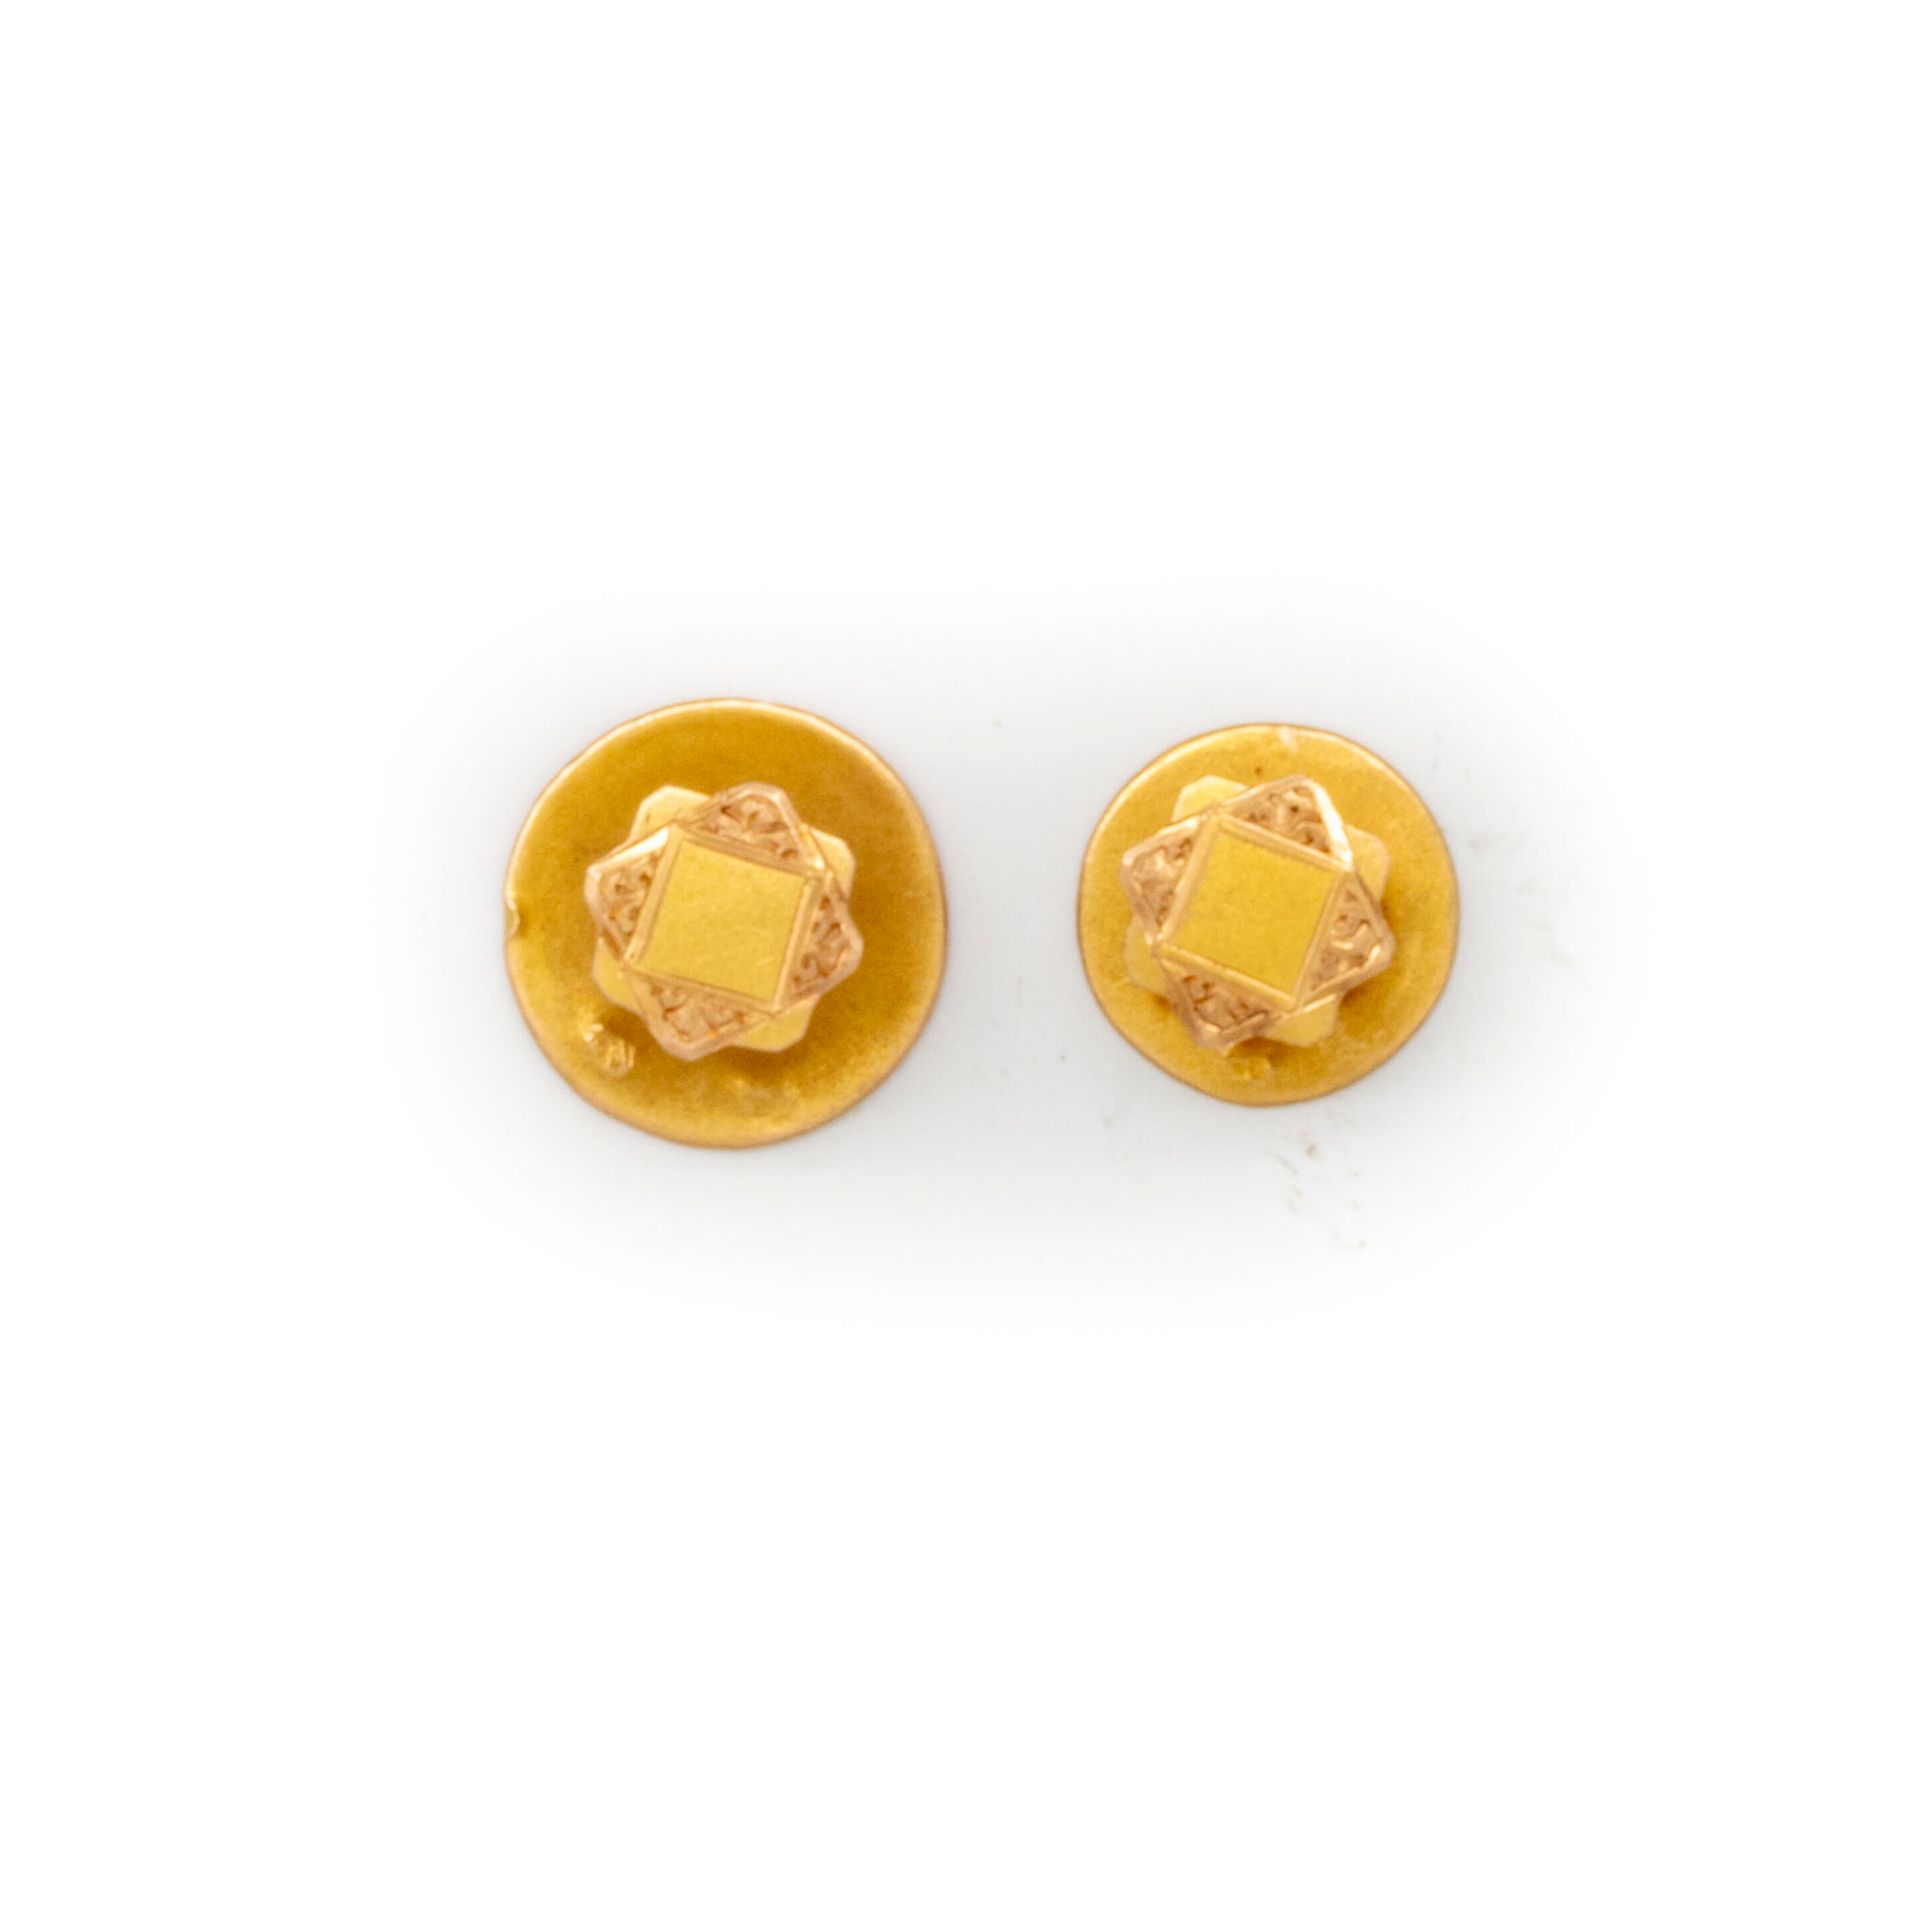 Null 2 boutons de cols en or jaune

Poids : 1,3 g